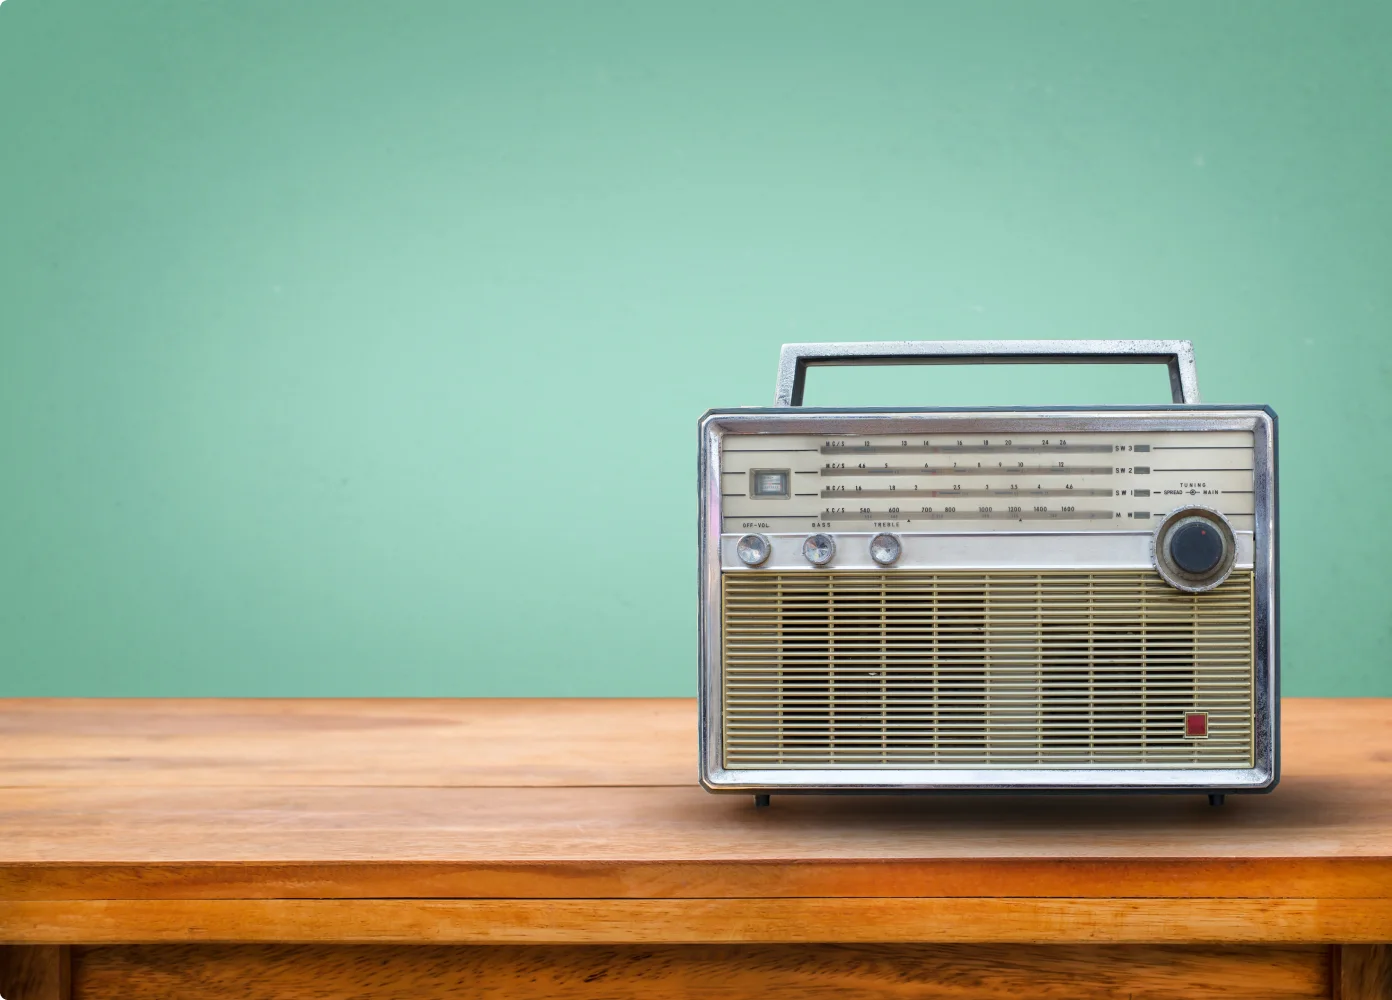 Ein altes Radio auf einem Holztisch vor einer grünen Wand.